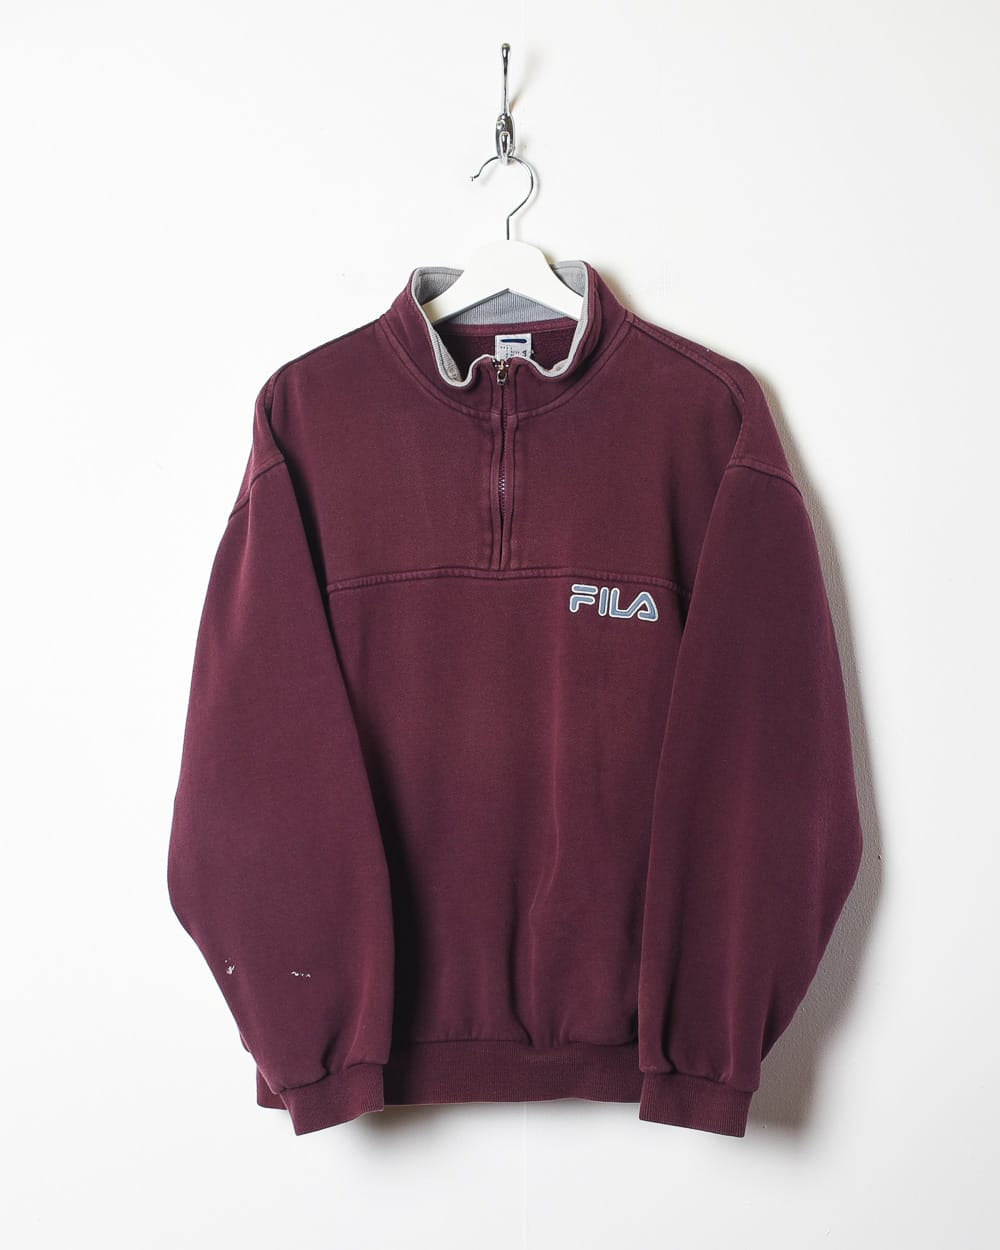 Maroon Fila 1/4 Zip Sweatshirt - Small